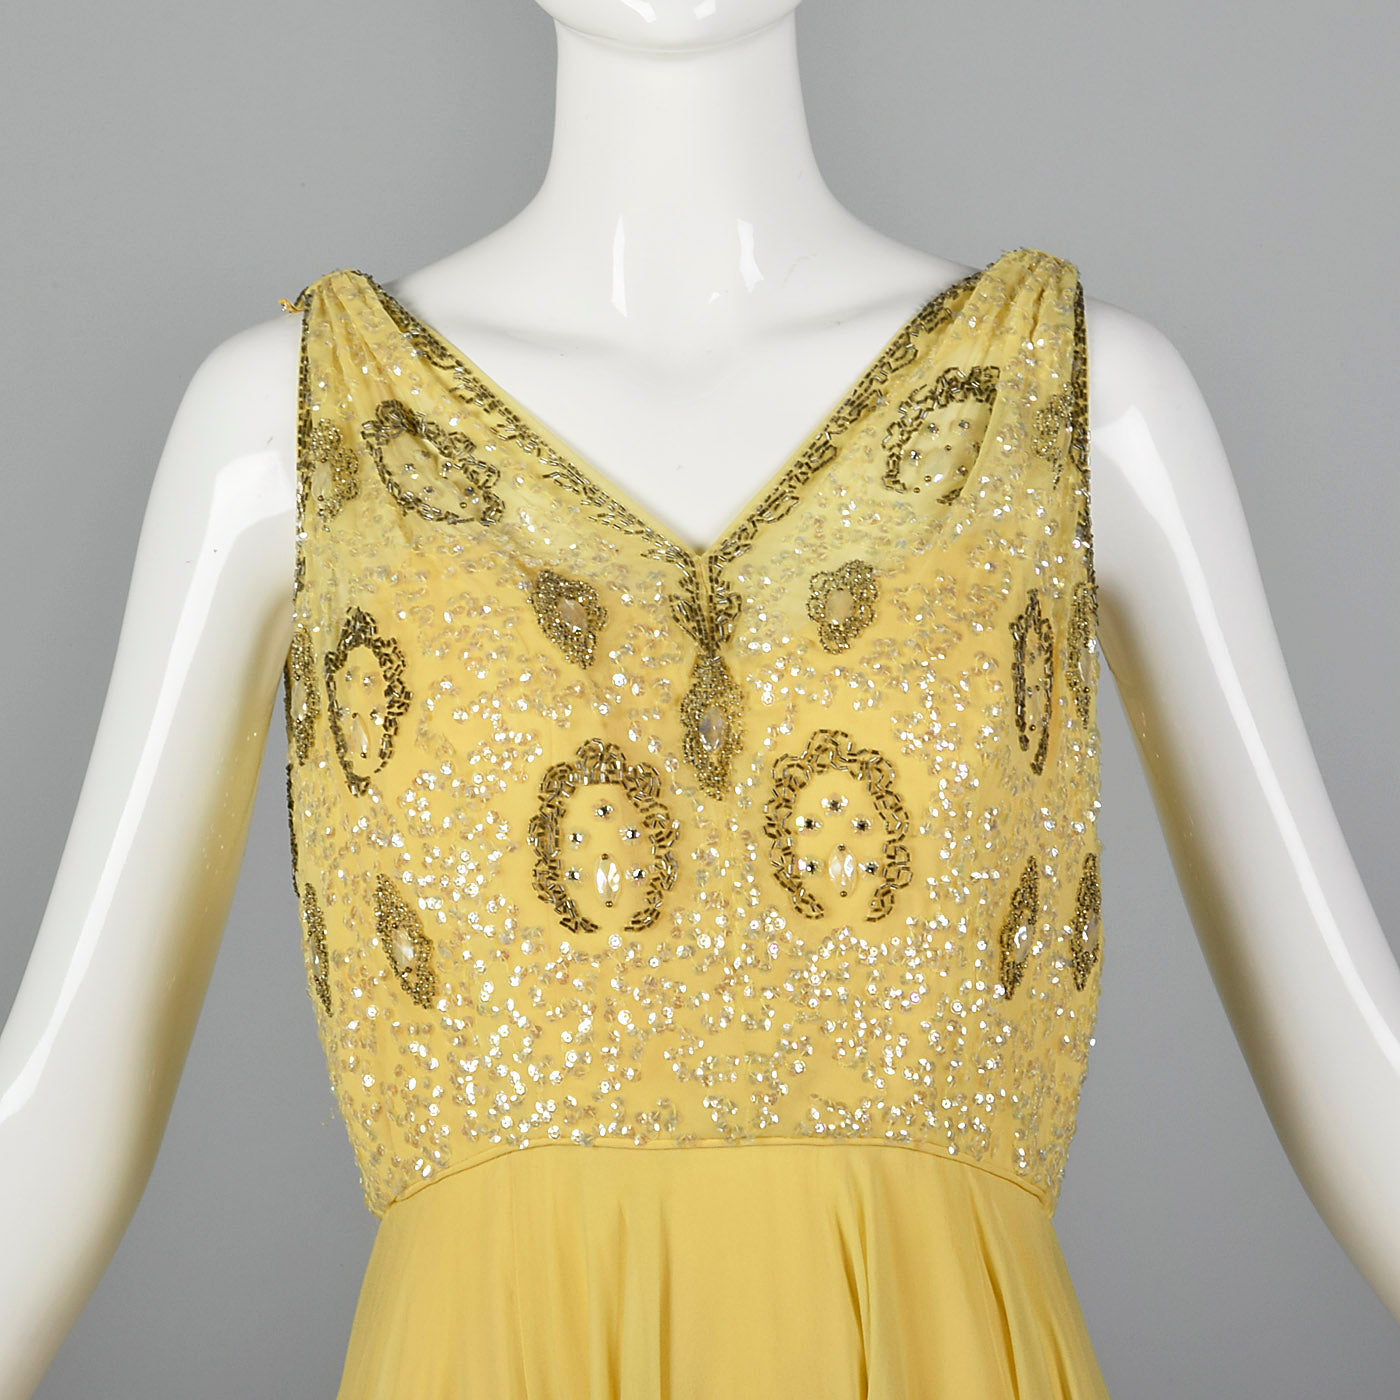 1960s Yellow Chiffon Beaded Dress